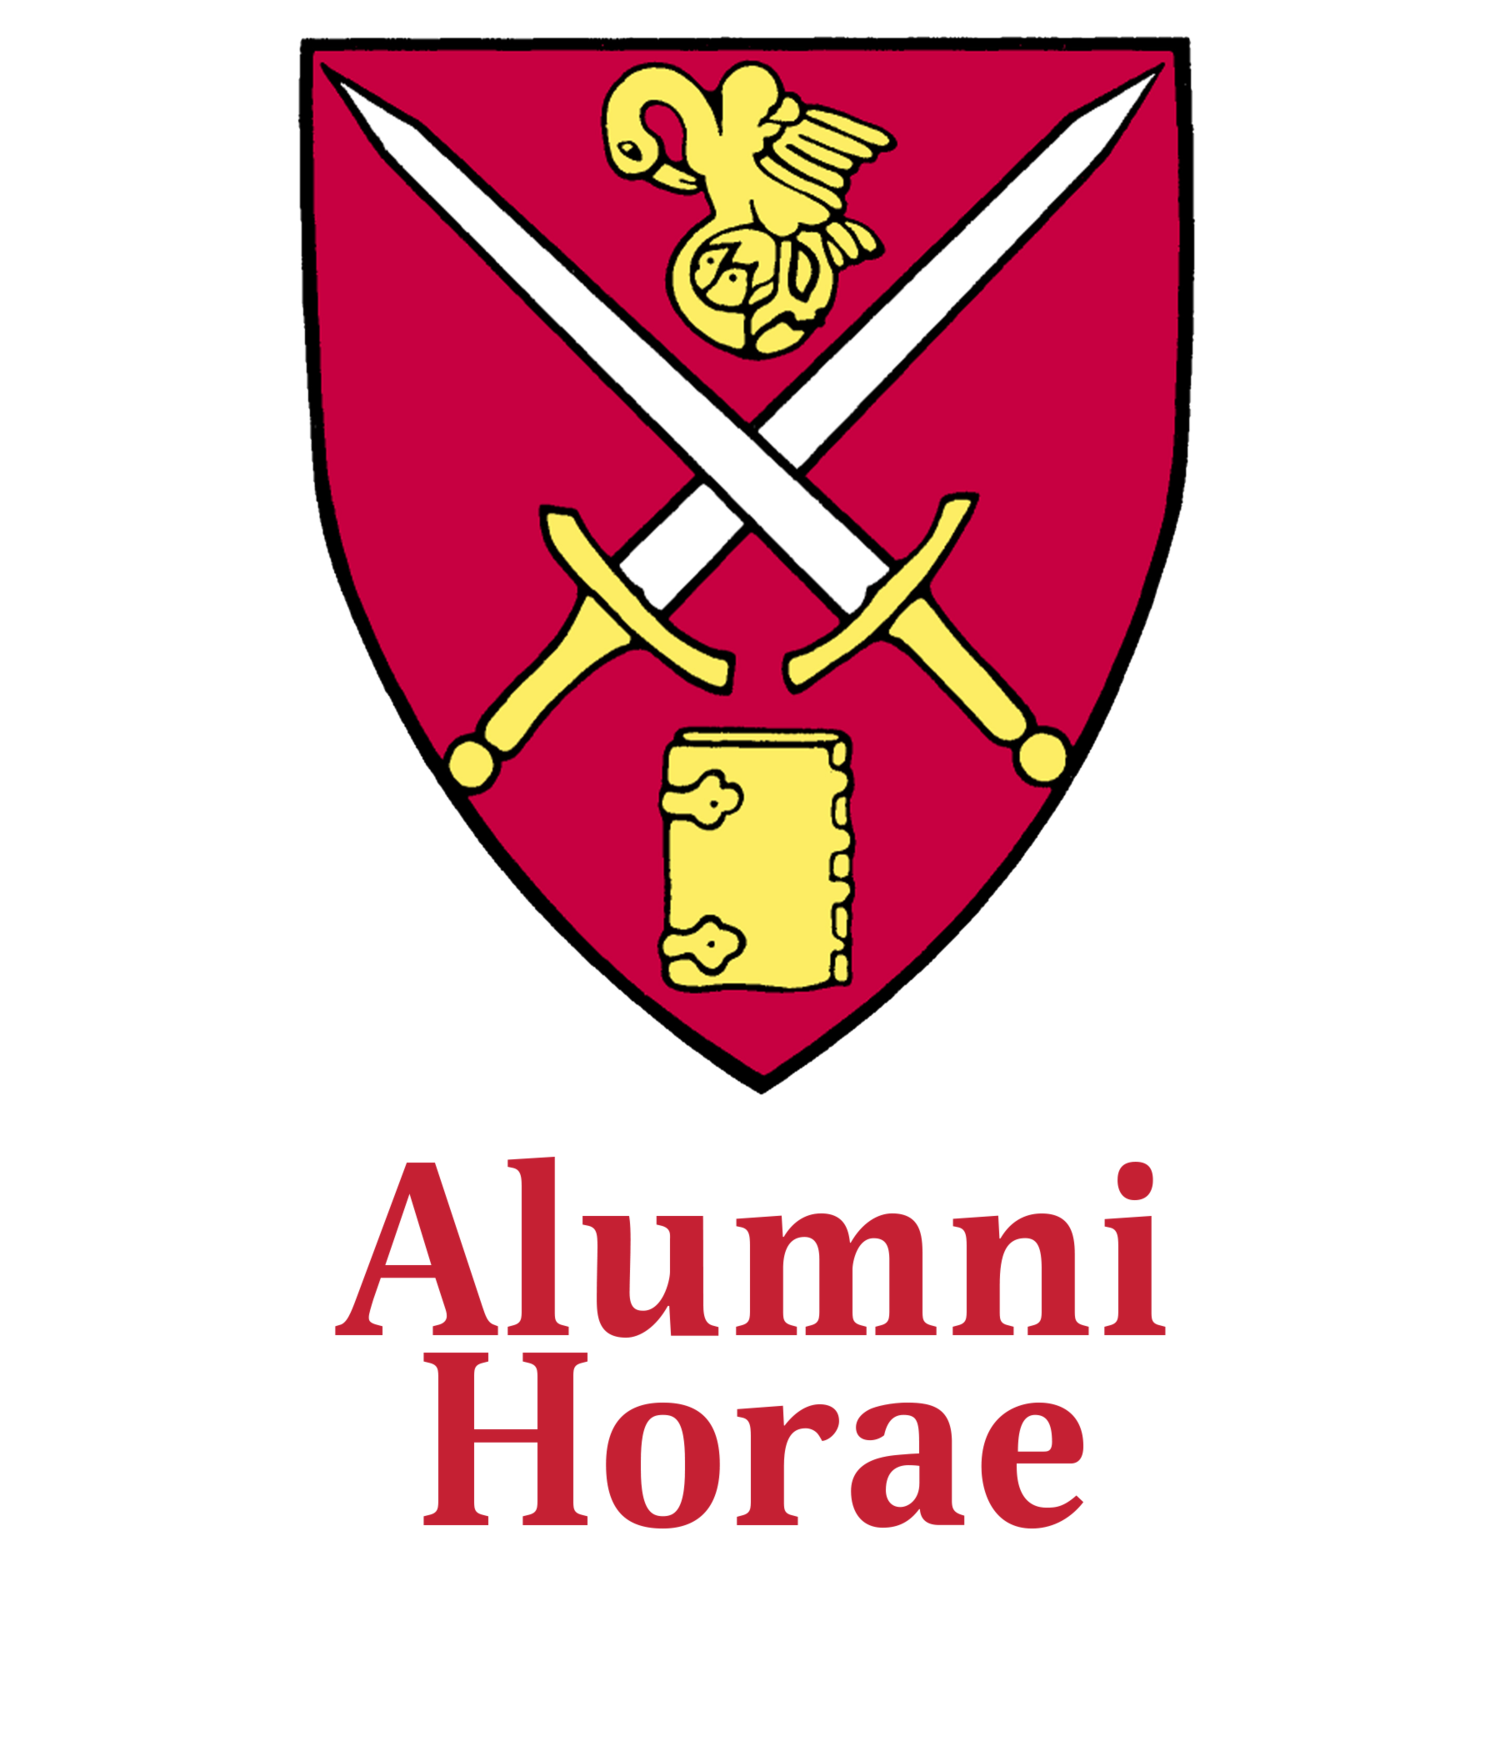 St. Paul's School Alumni Horae